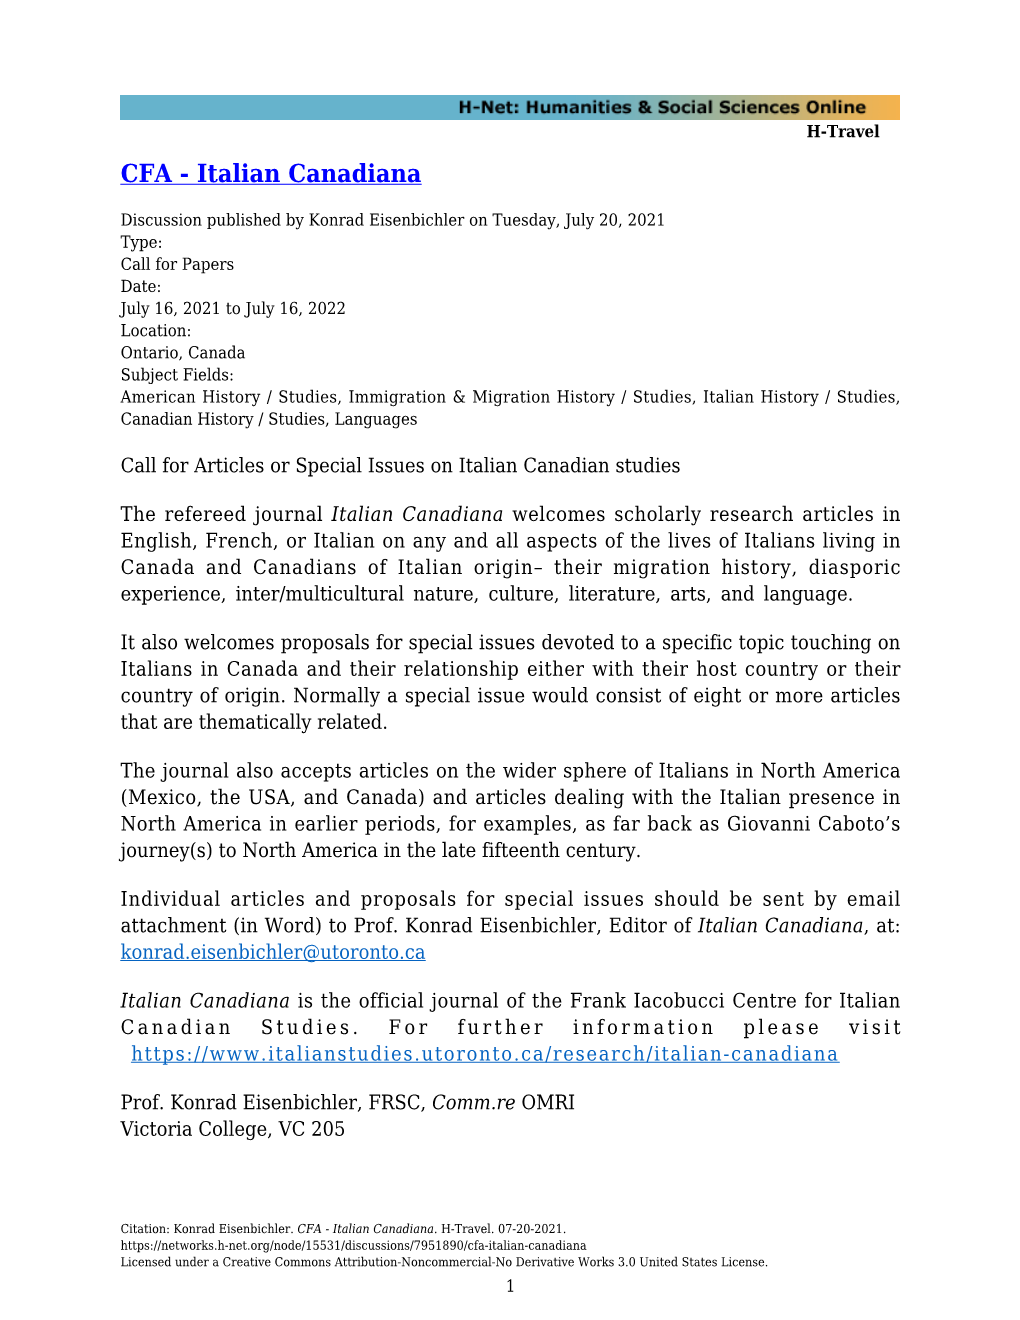 CFA - Italian Canadiana